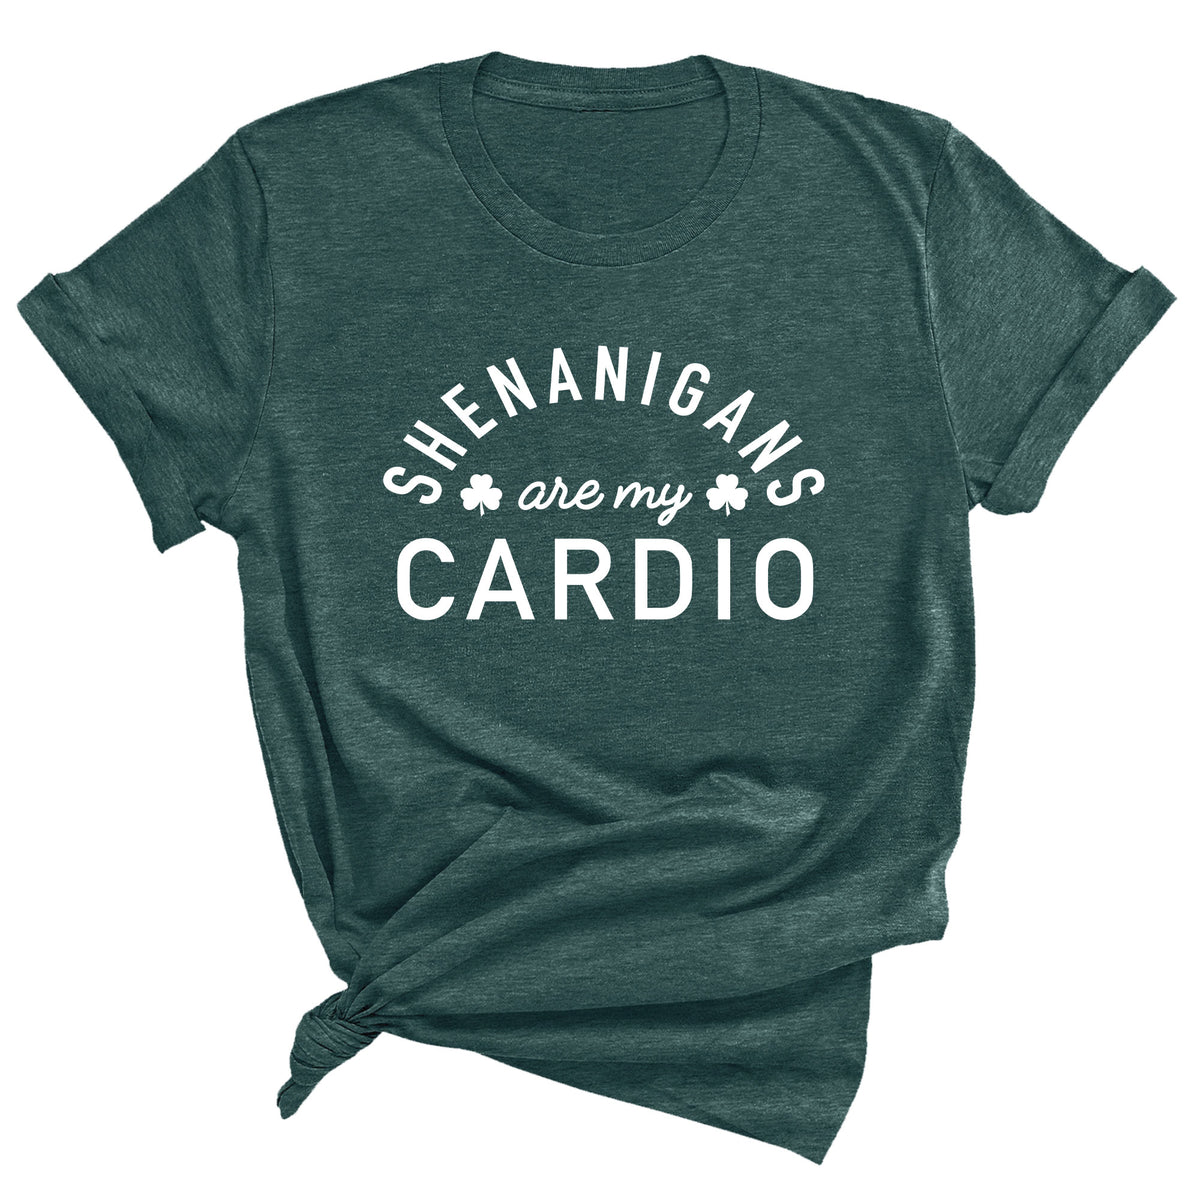 Shenanigans are My Cardio Unisex T-Shirt